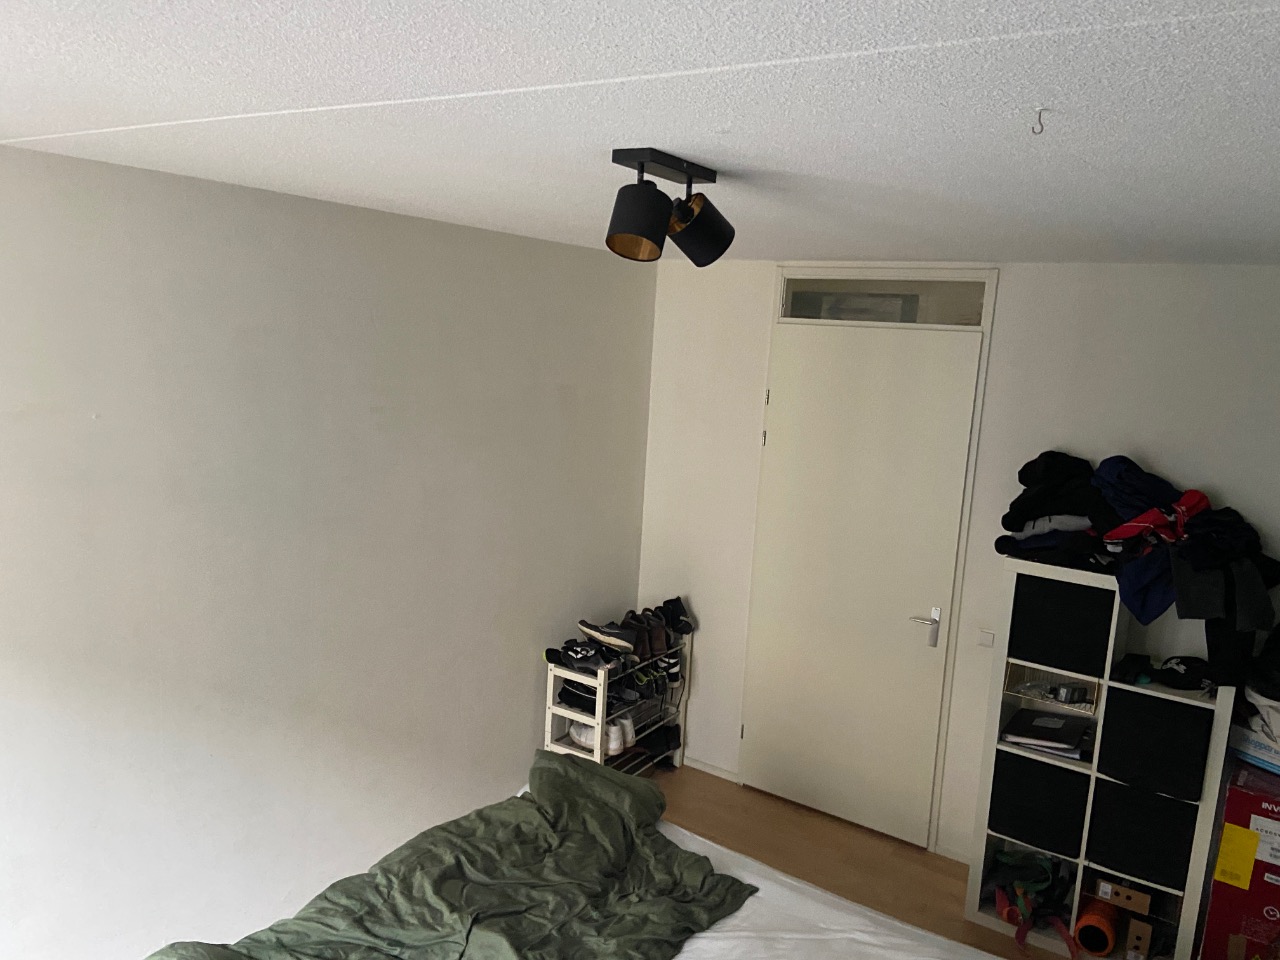 Appartement – Middenburcht – 3452MS – Vleuten – Prijs: 631 P/M